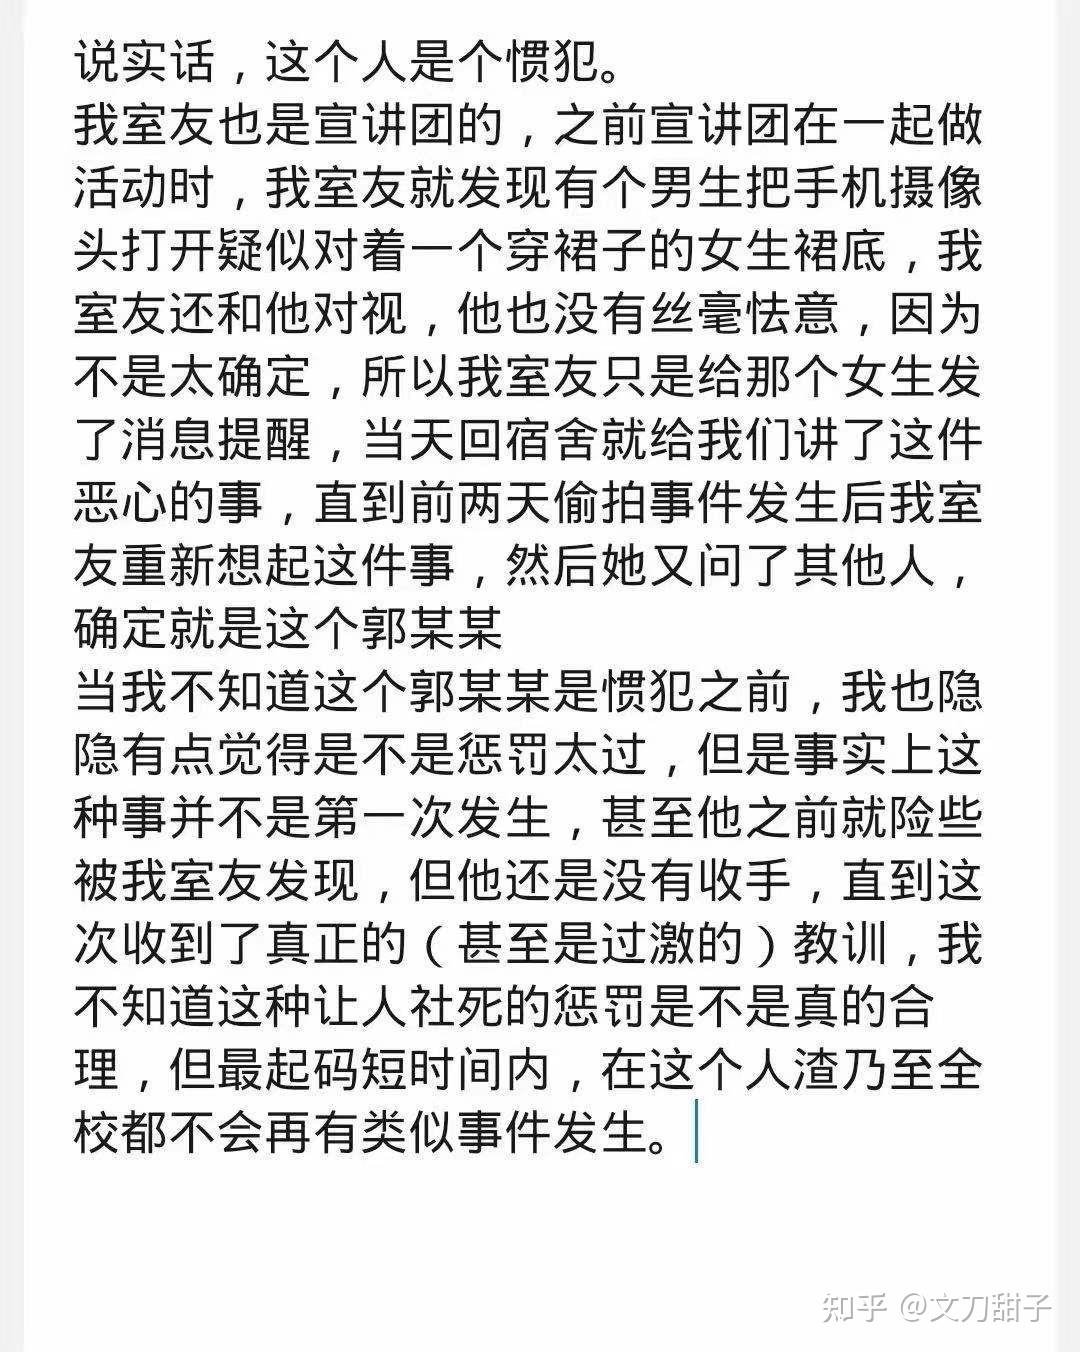 42岁女香港站疑遭偷拍裙底 34岁男子炮台山站被捕 | 星岛日报